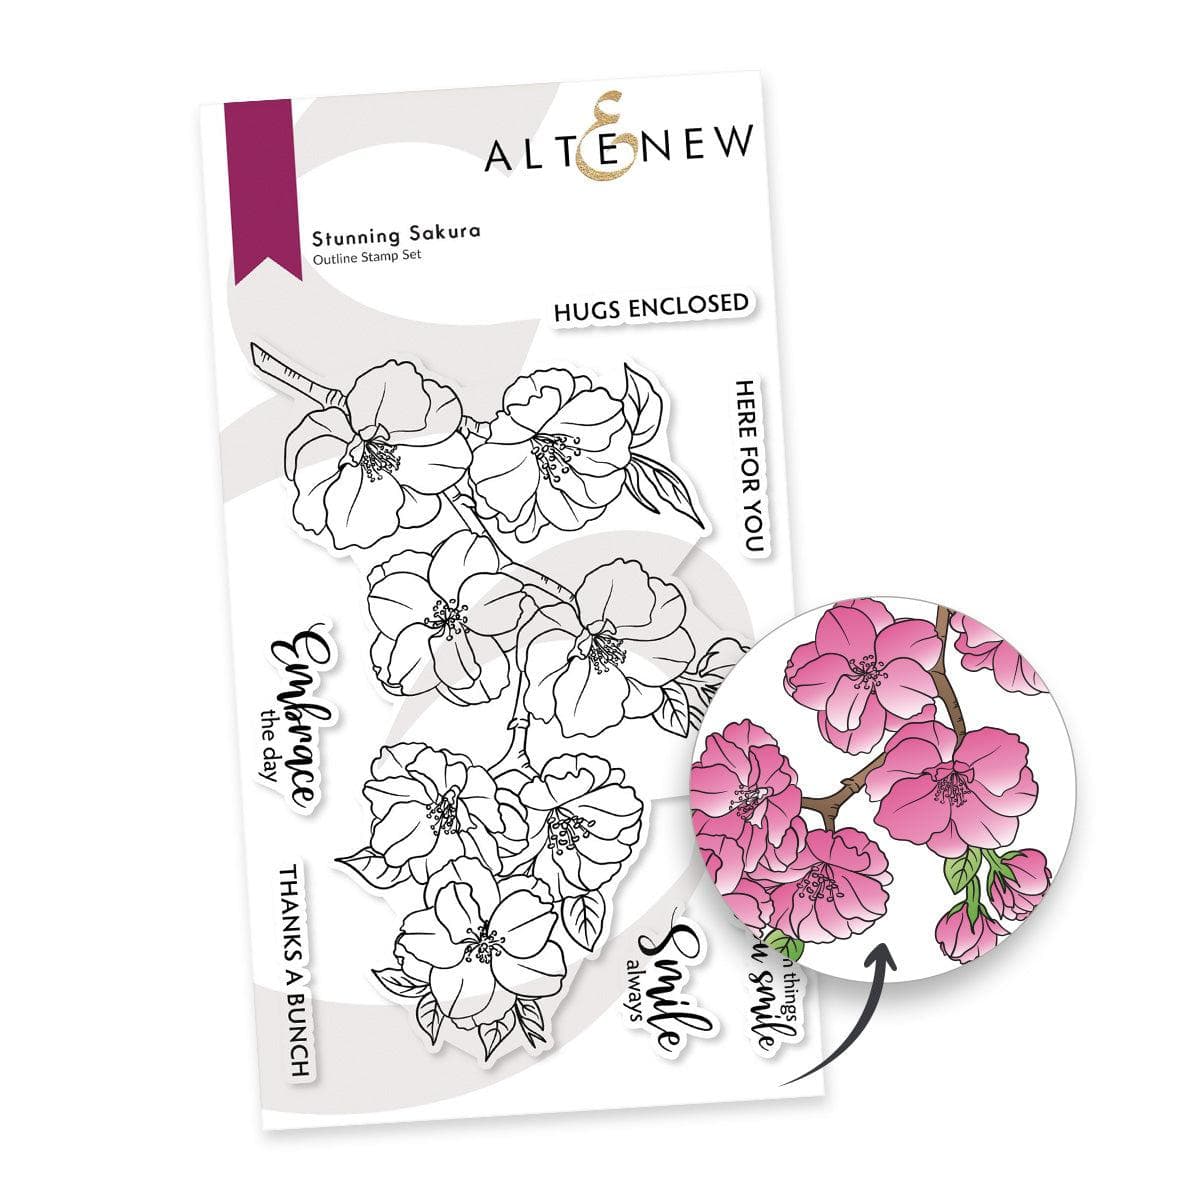 Altenew Partner Team Stamp & Die Bundle Stunning Sakura